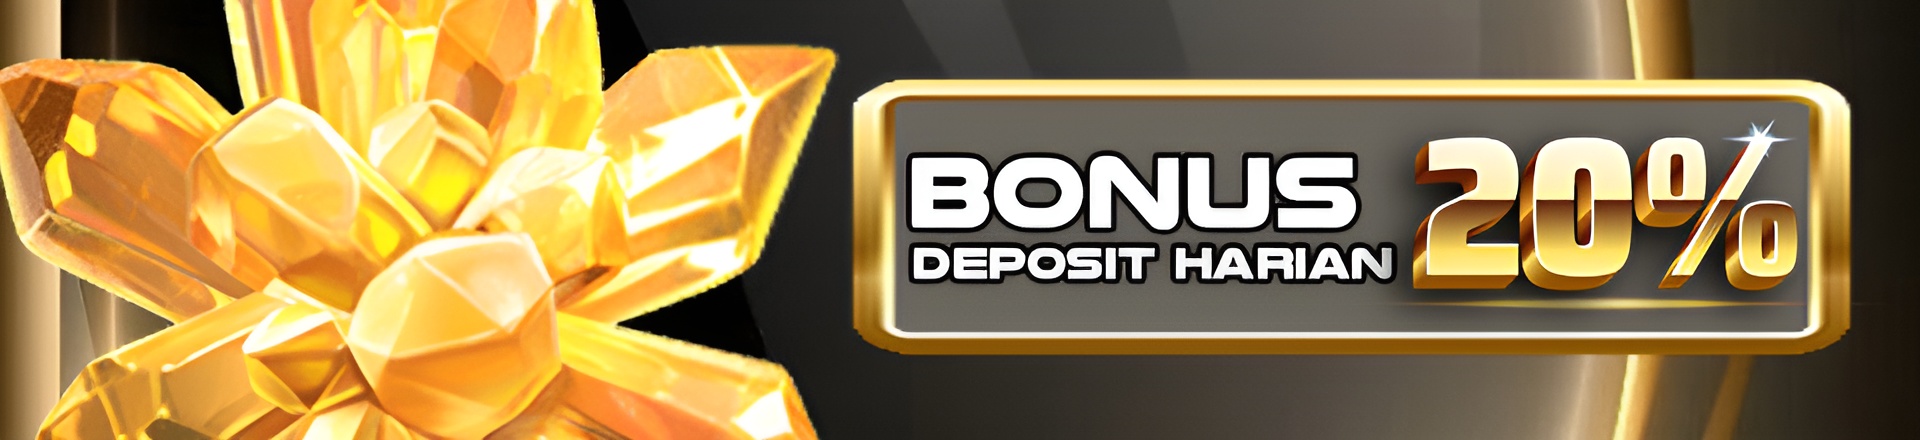 Bonus deposit gacor terus 20%